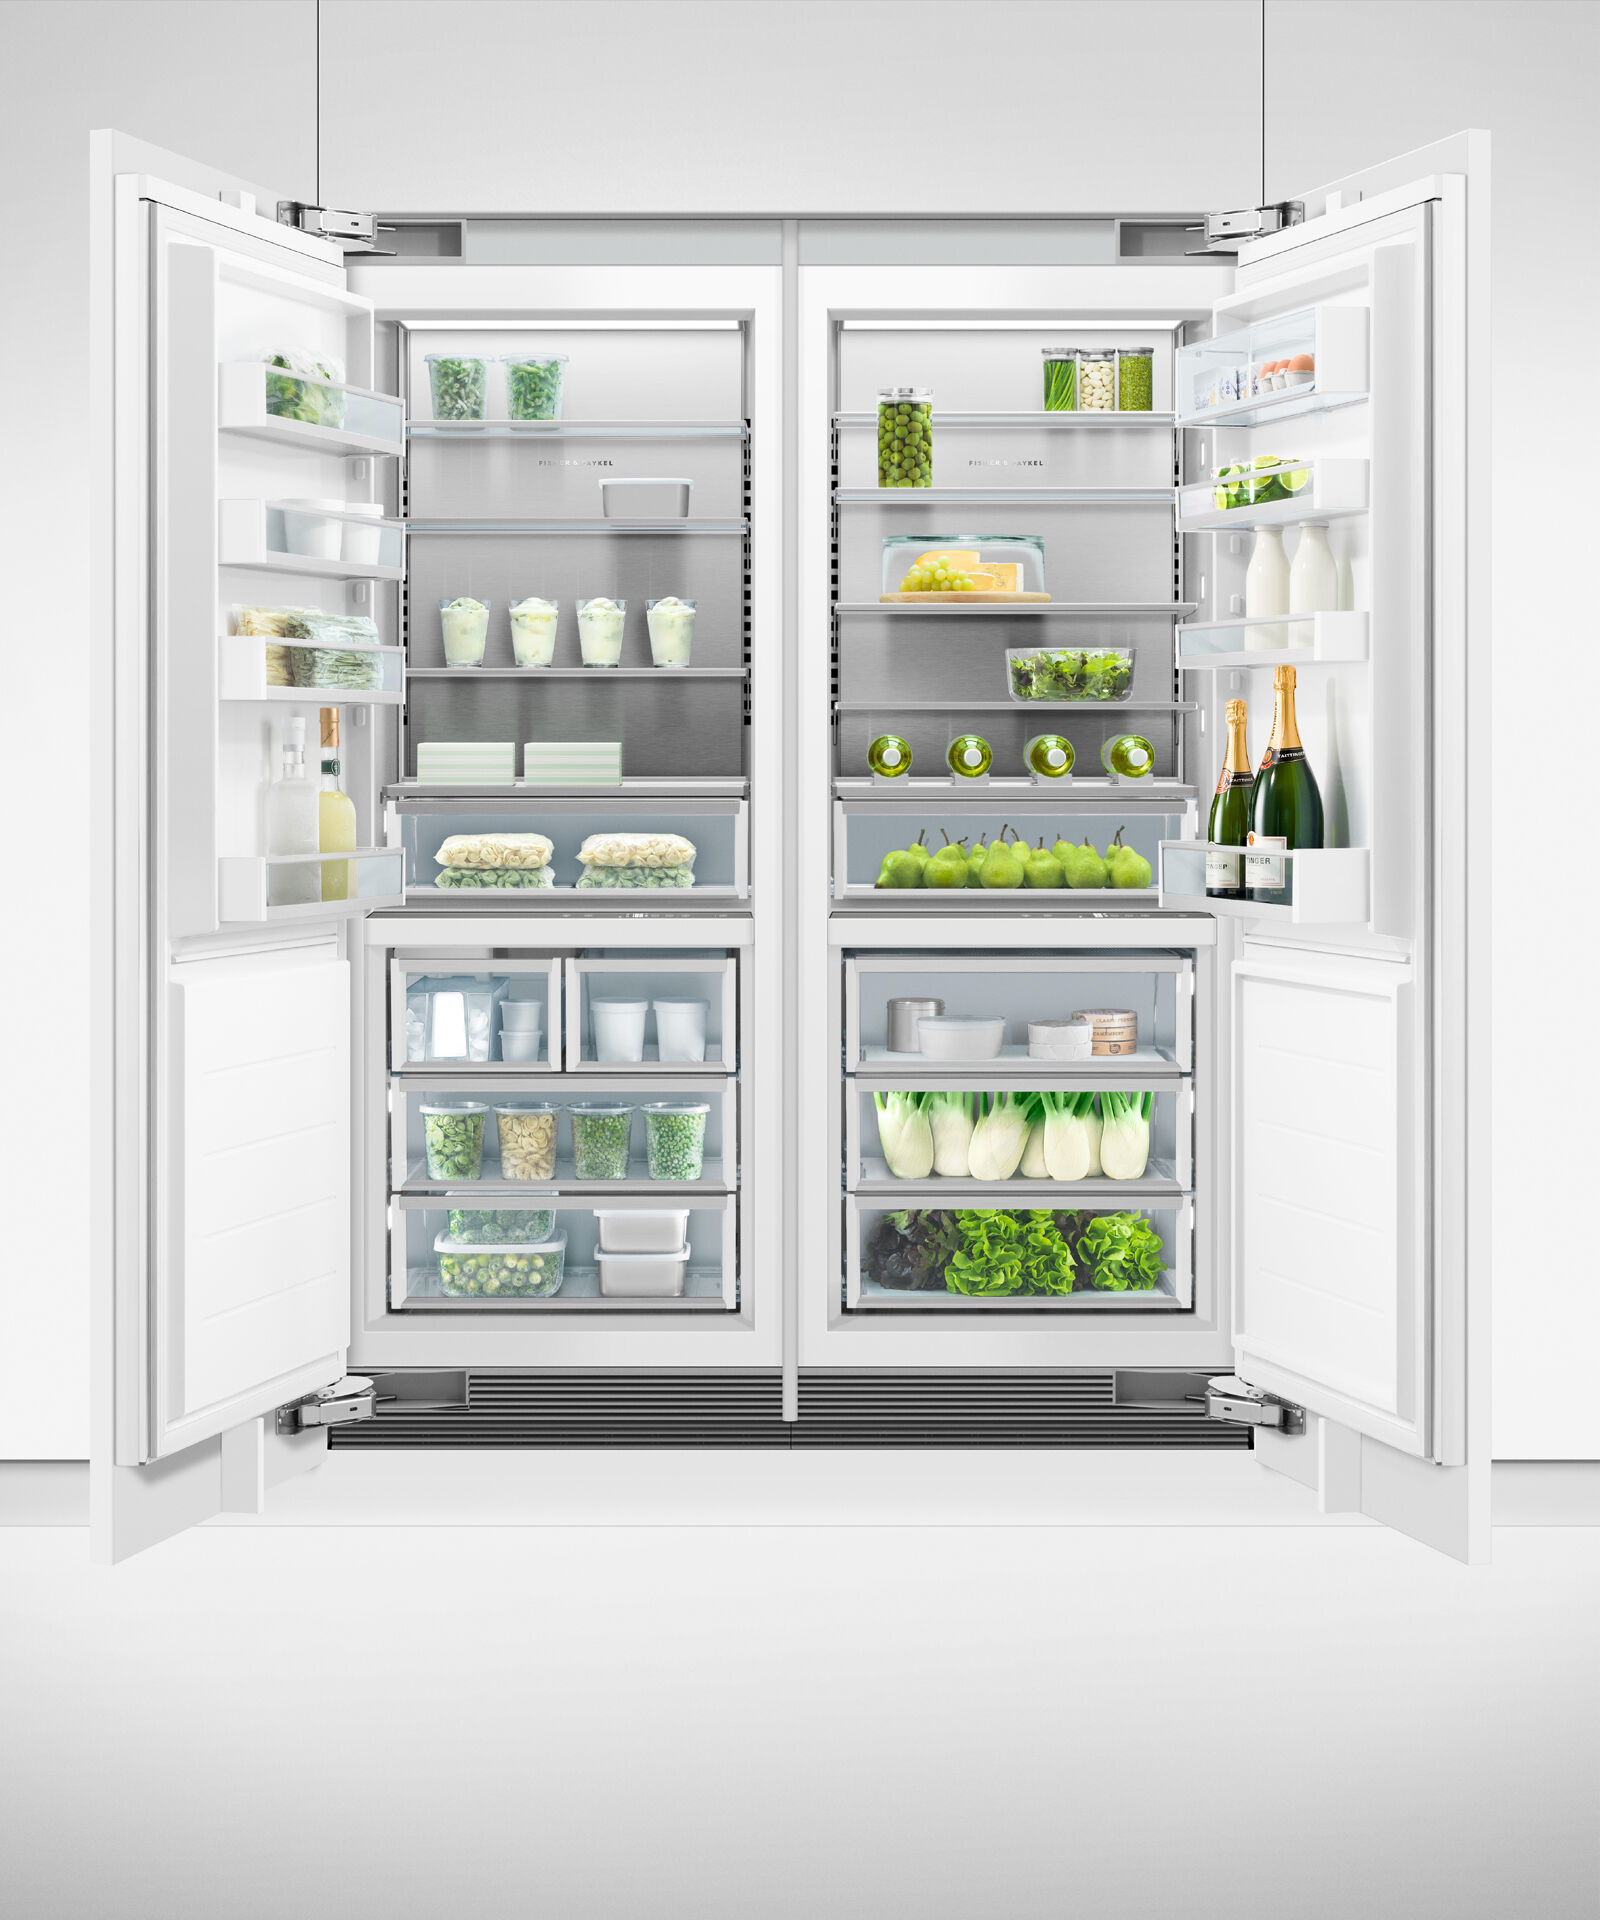 嵌入式立式冷凍櫃, 76cm, 自動製冰 gallery image 9.0